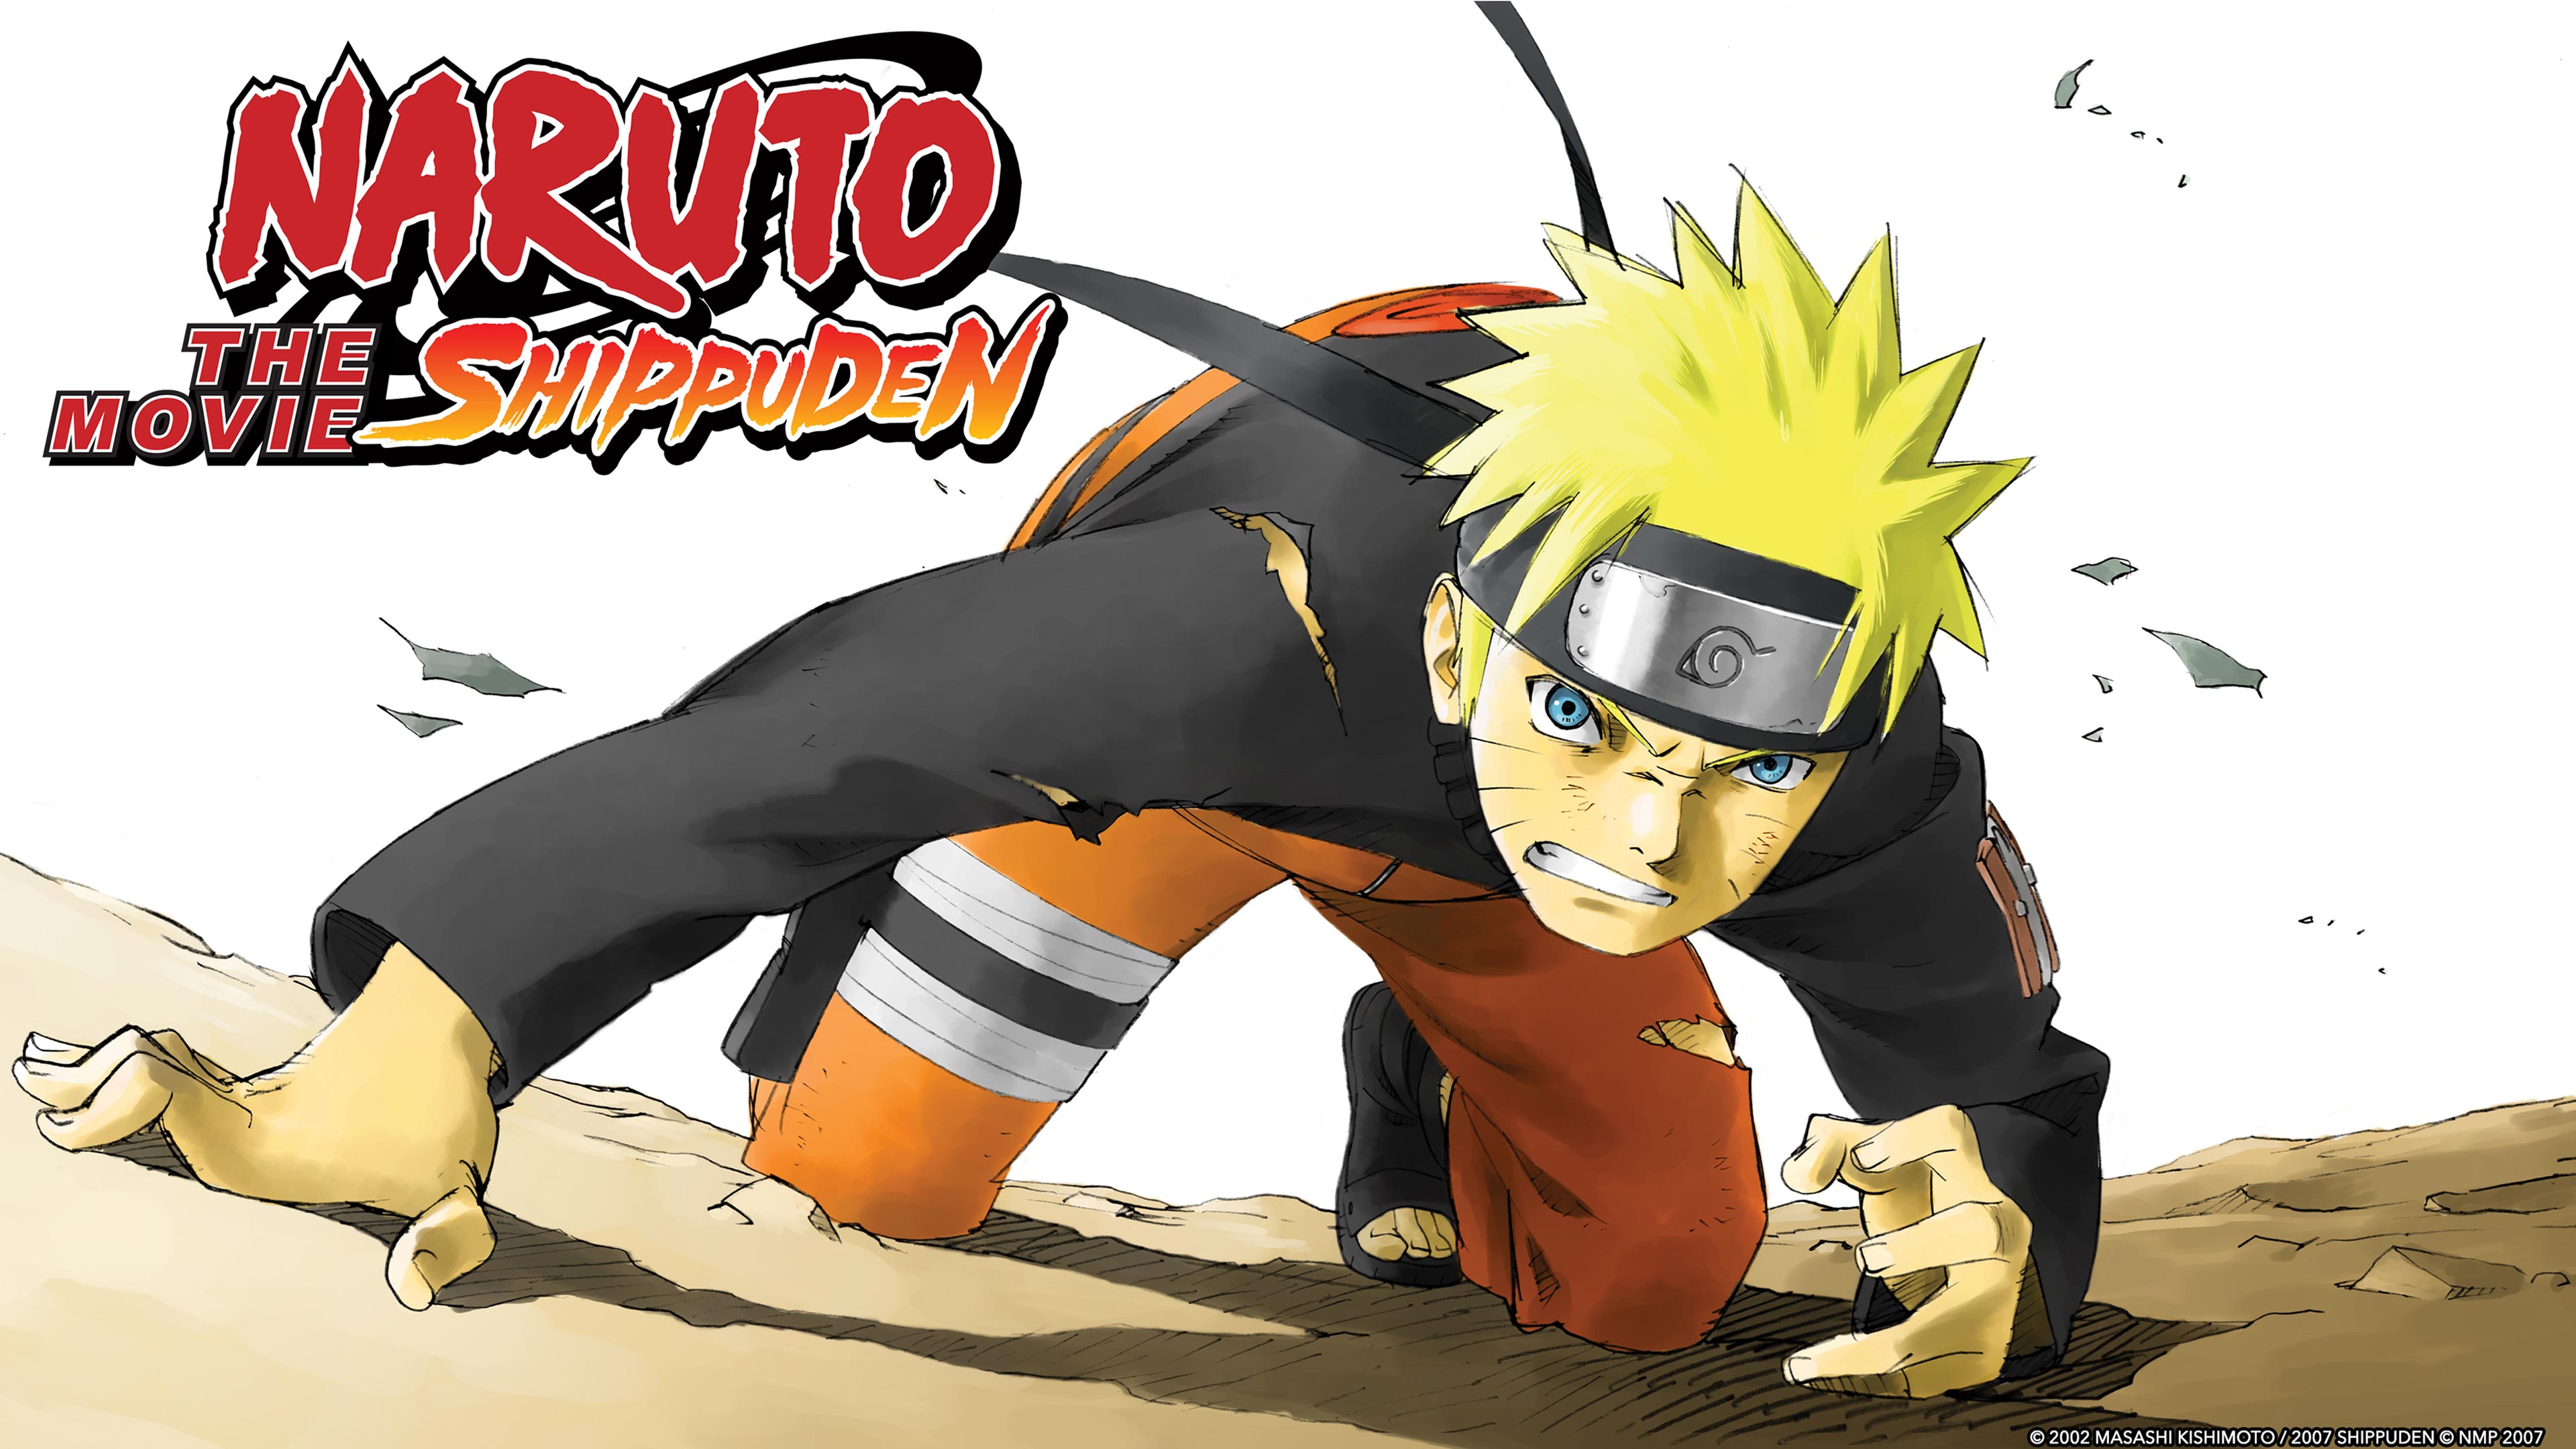 Naruto Shippuden disponível dublado no Claro Video > [PLG]